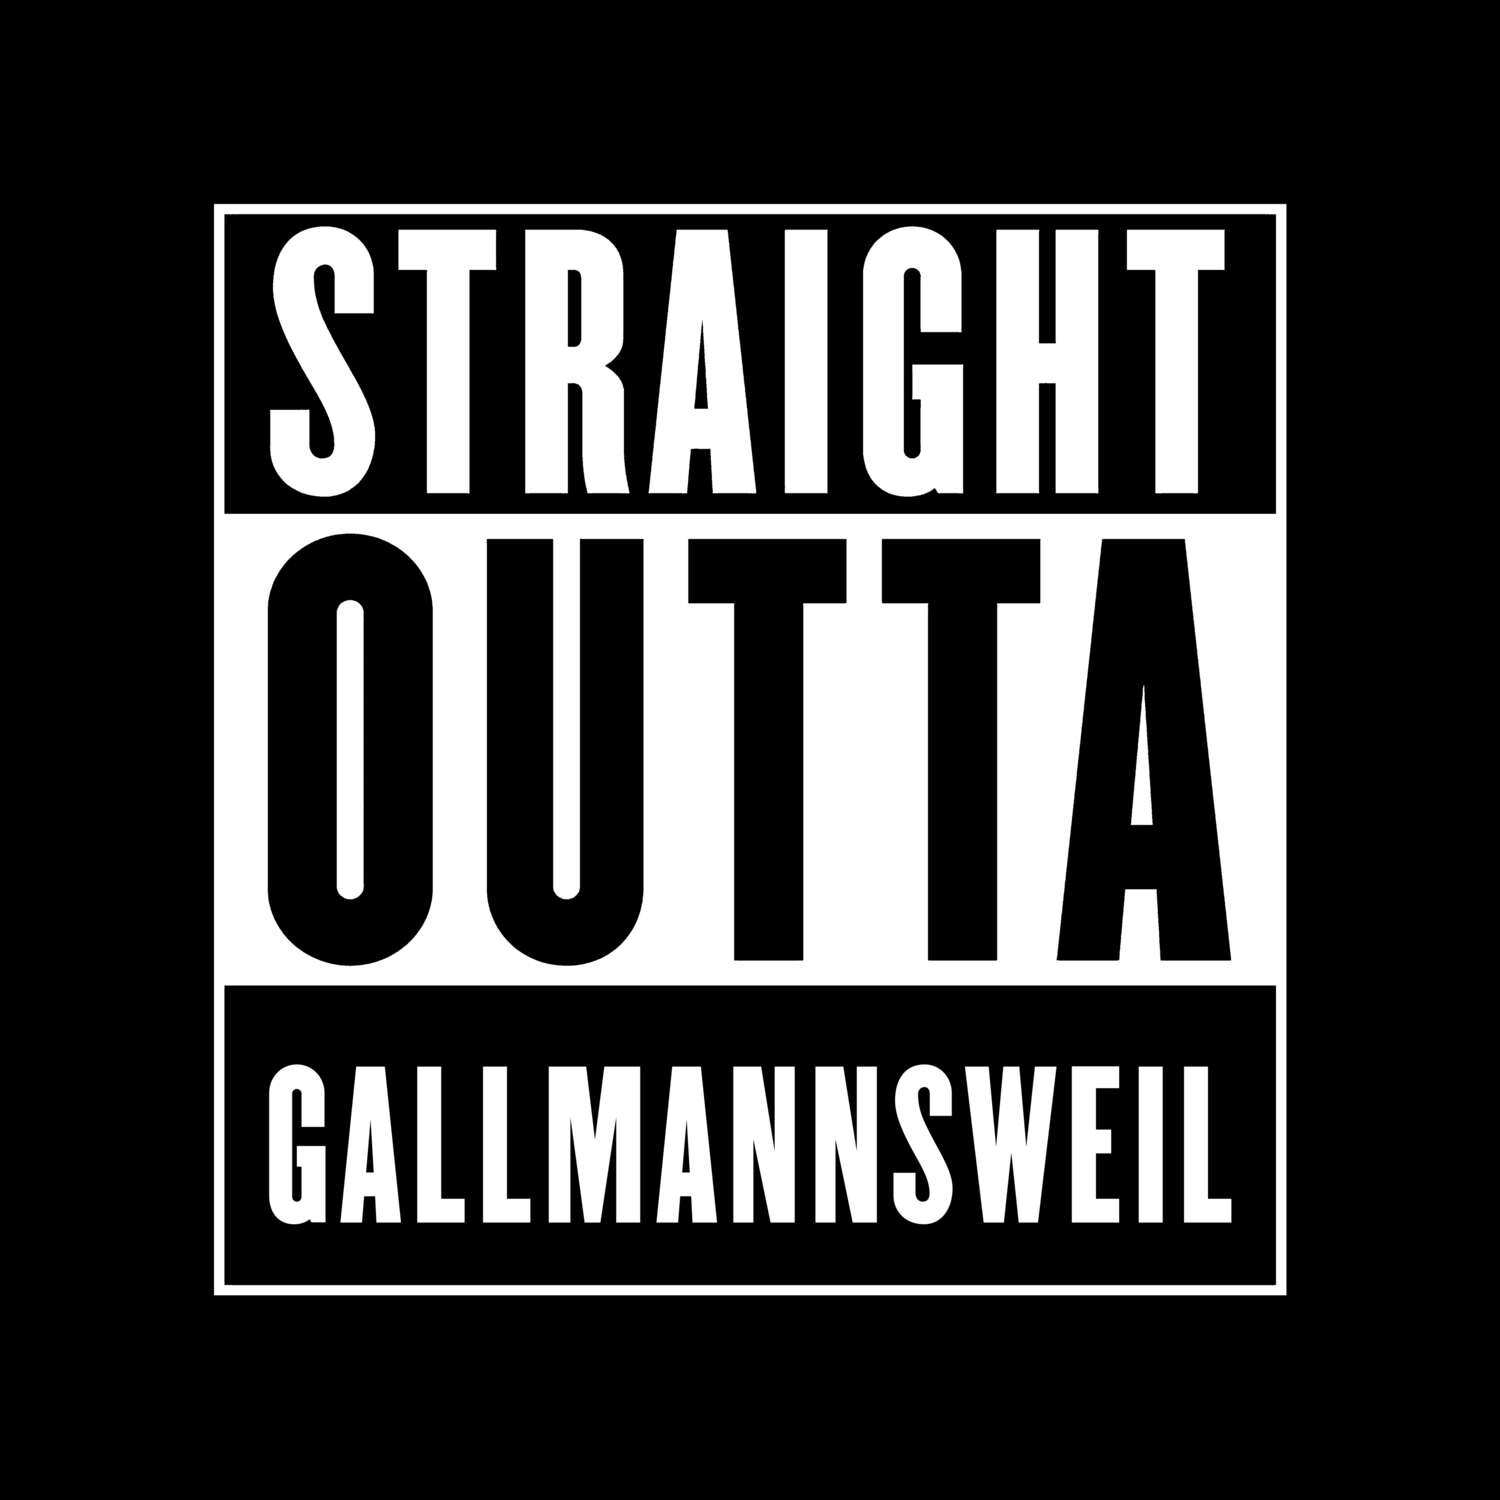 Gallmannsweil T-Shirt »Straight Outta«